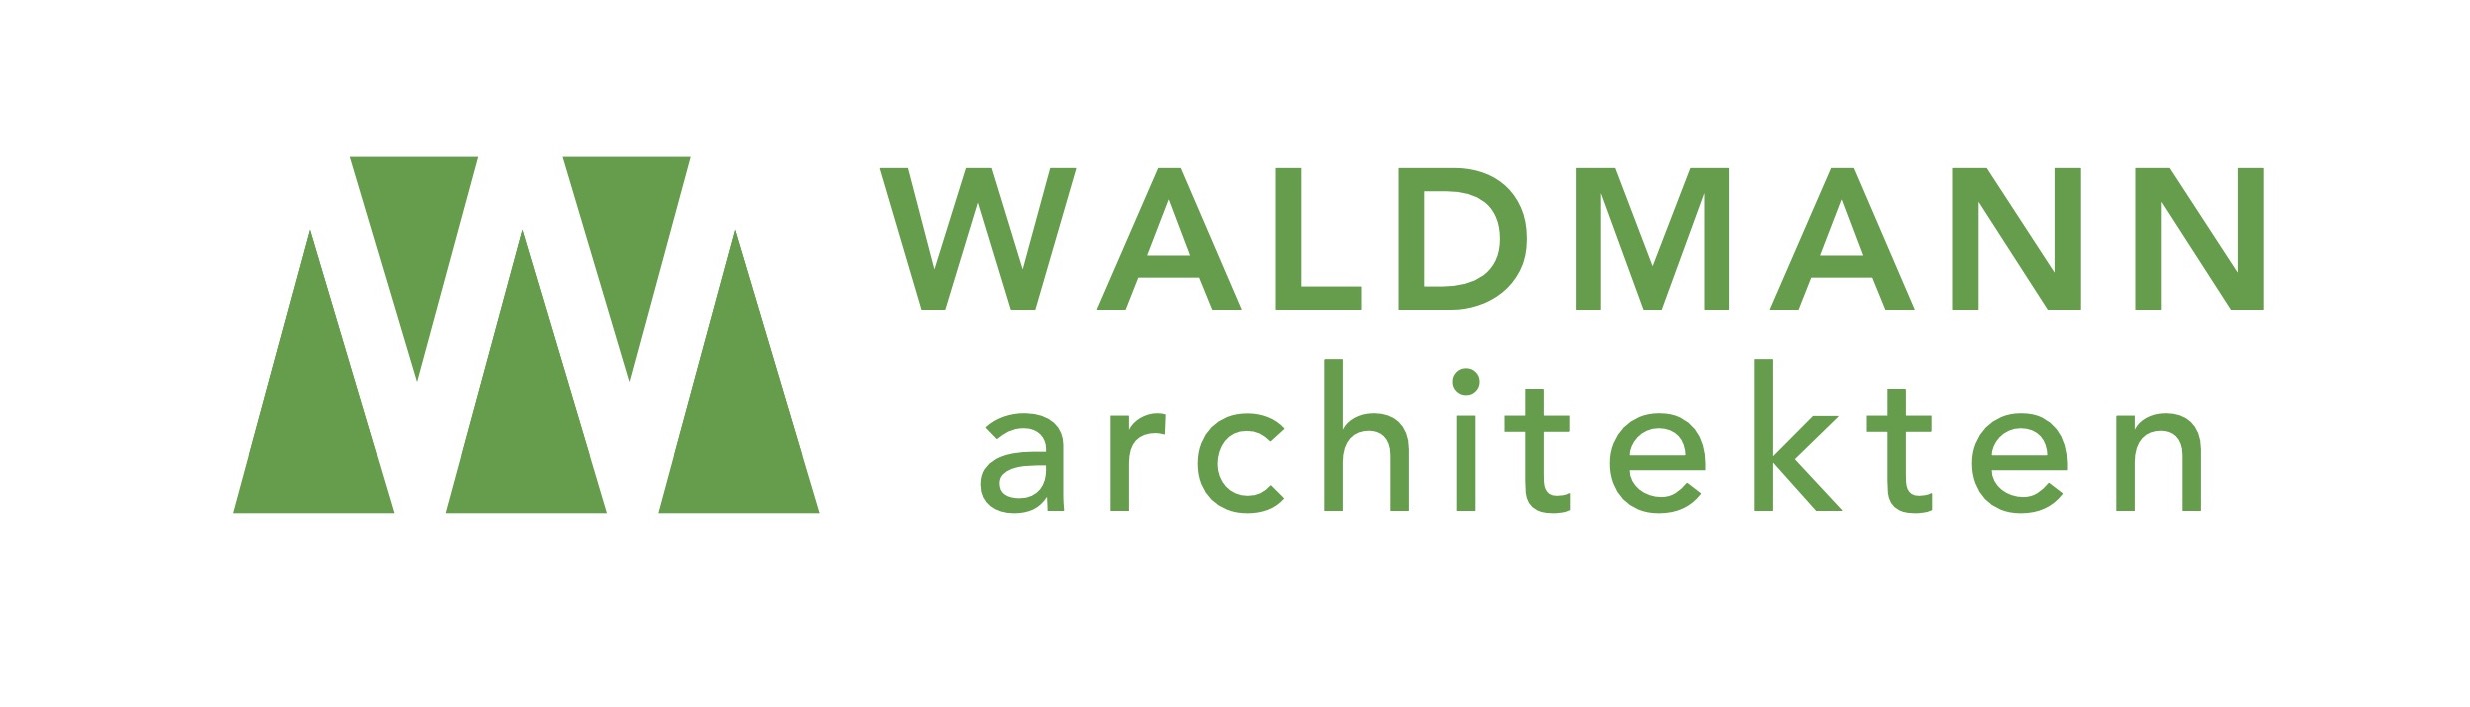 Waldmann Architekten